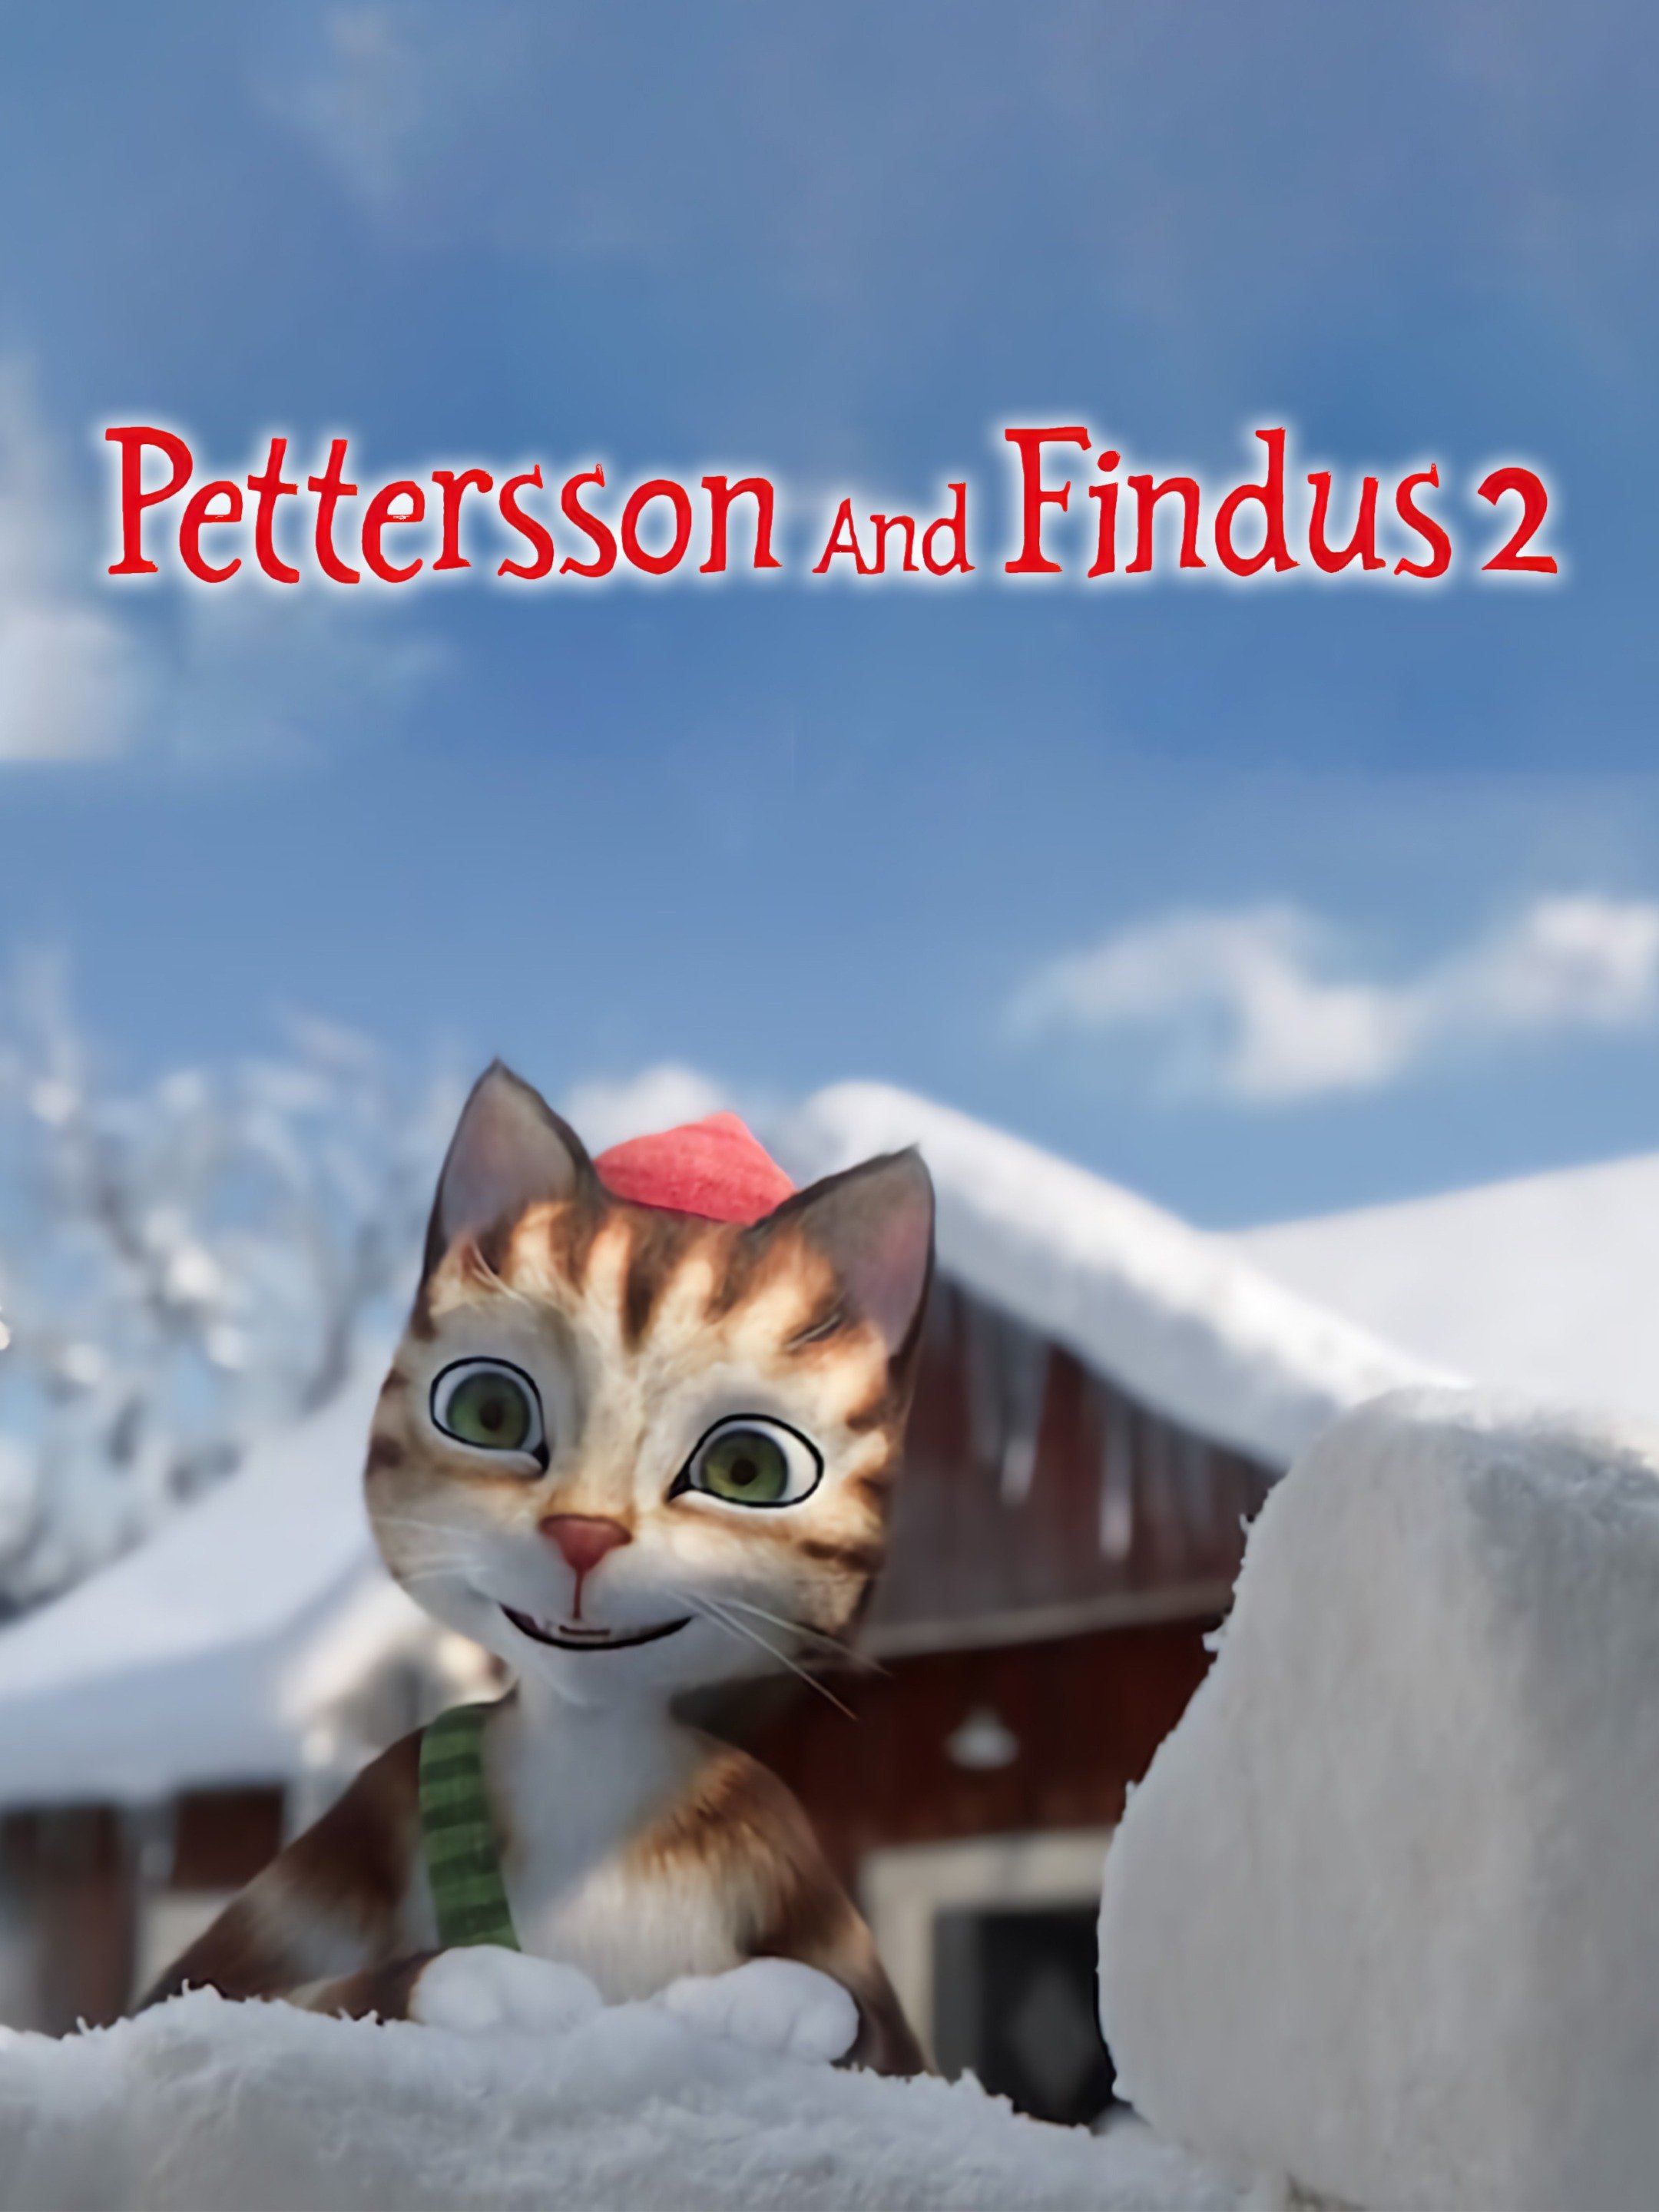 Pettsson und Findus - streaming tv series online